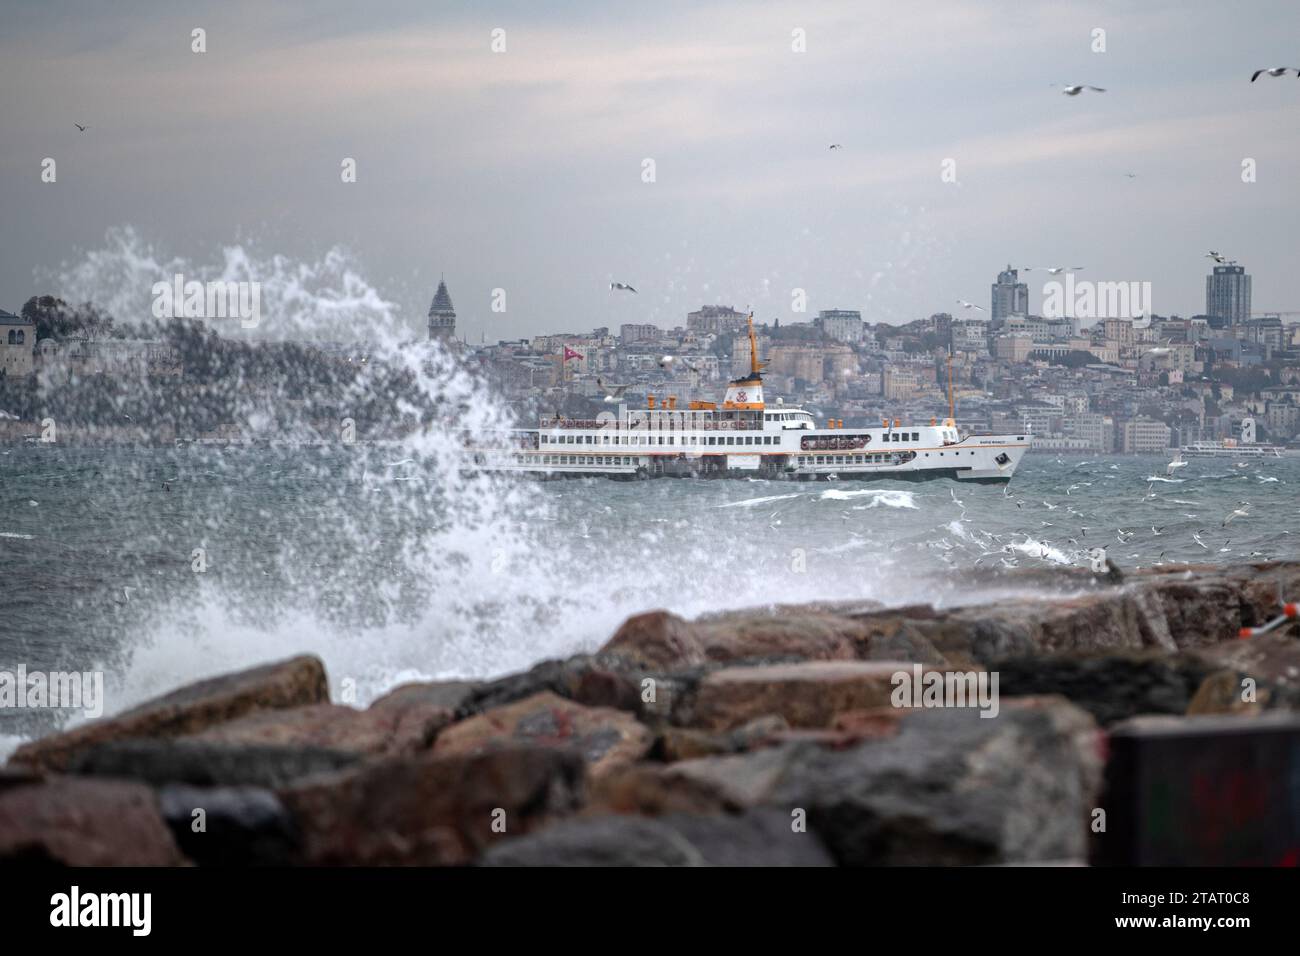 Un ferry des lignes de la ville vu passer derrière les vagues frappant les rochers à la plage de Moda. En raison du vent du sud-ouest affectant Istanbul, de hautes vagues ont été observées sur la côte de Moda. Banque D'Images